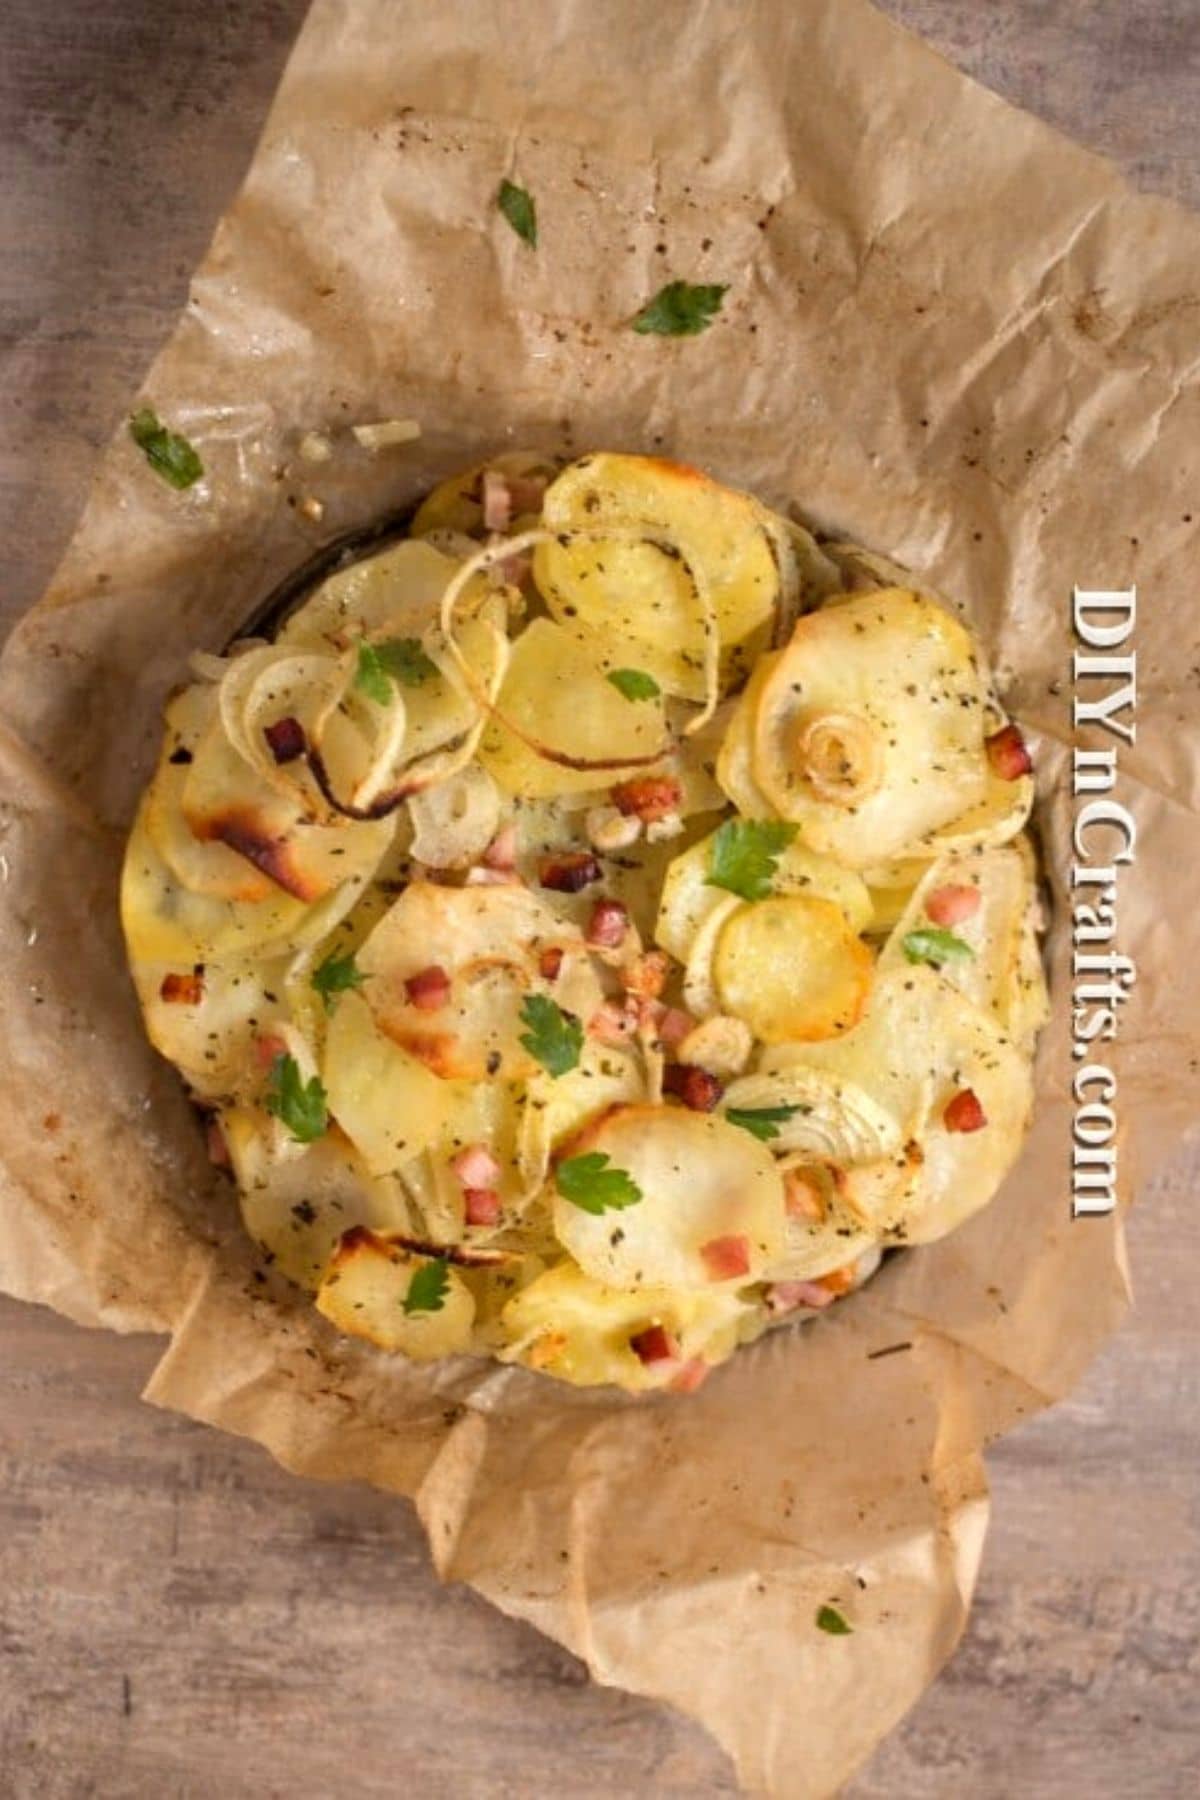 Potato cake with onions